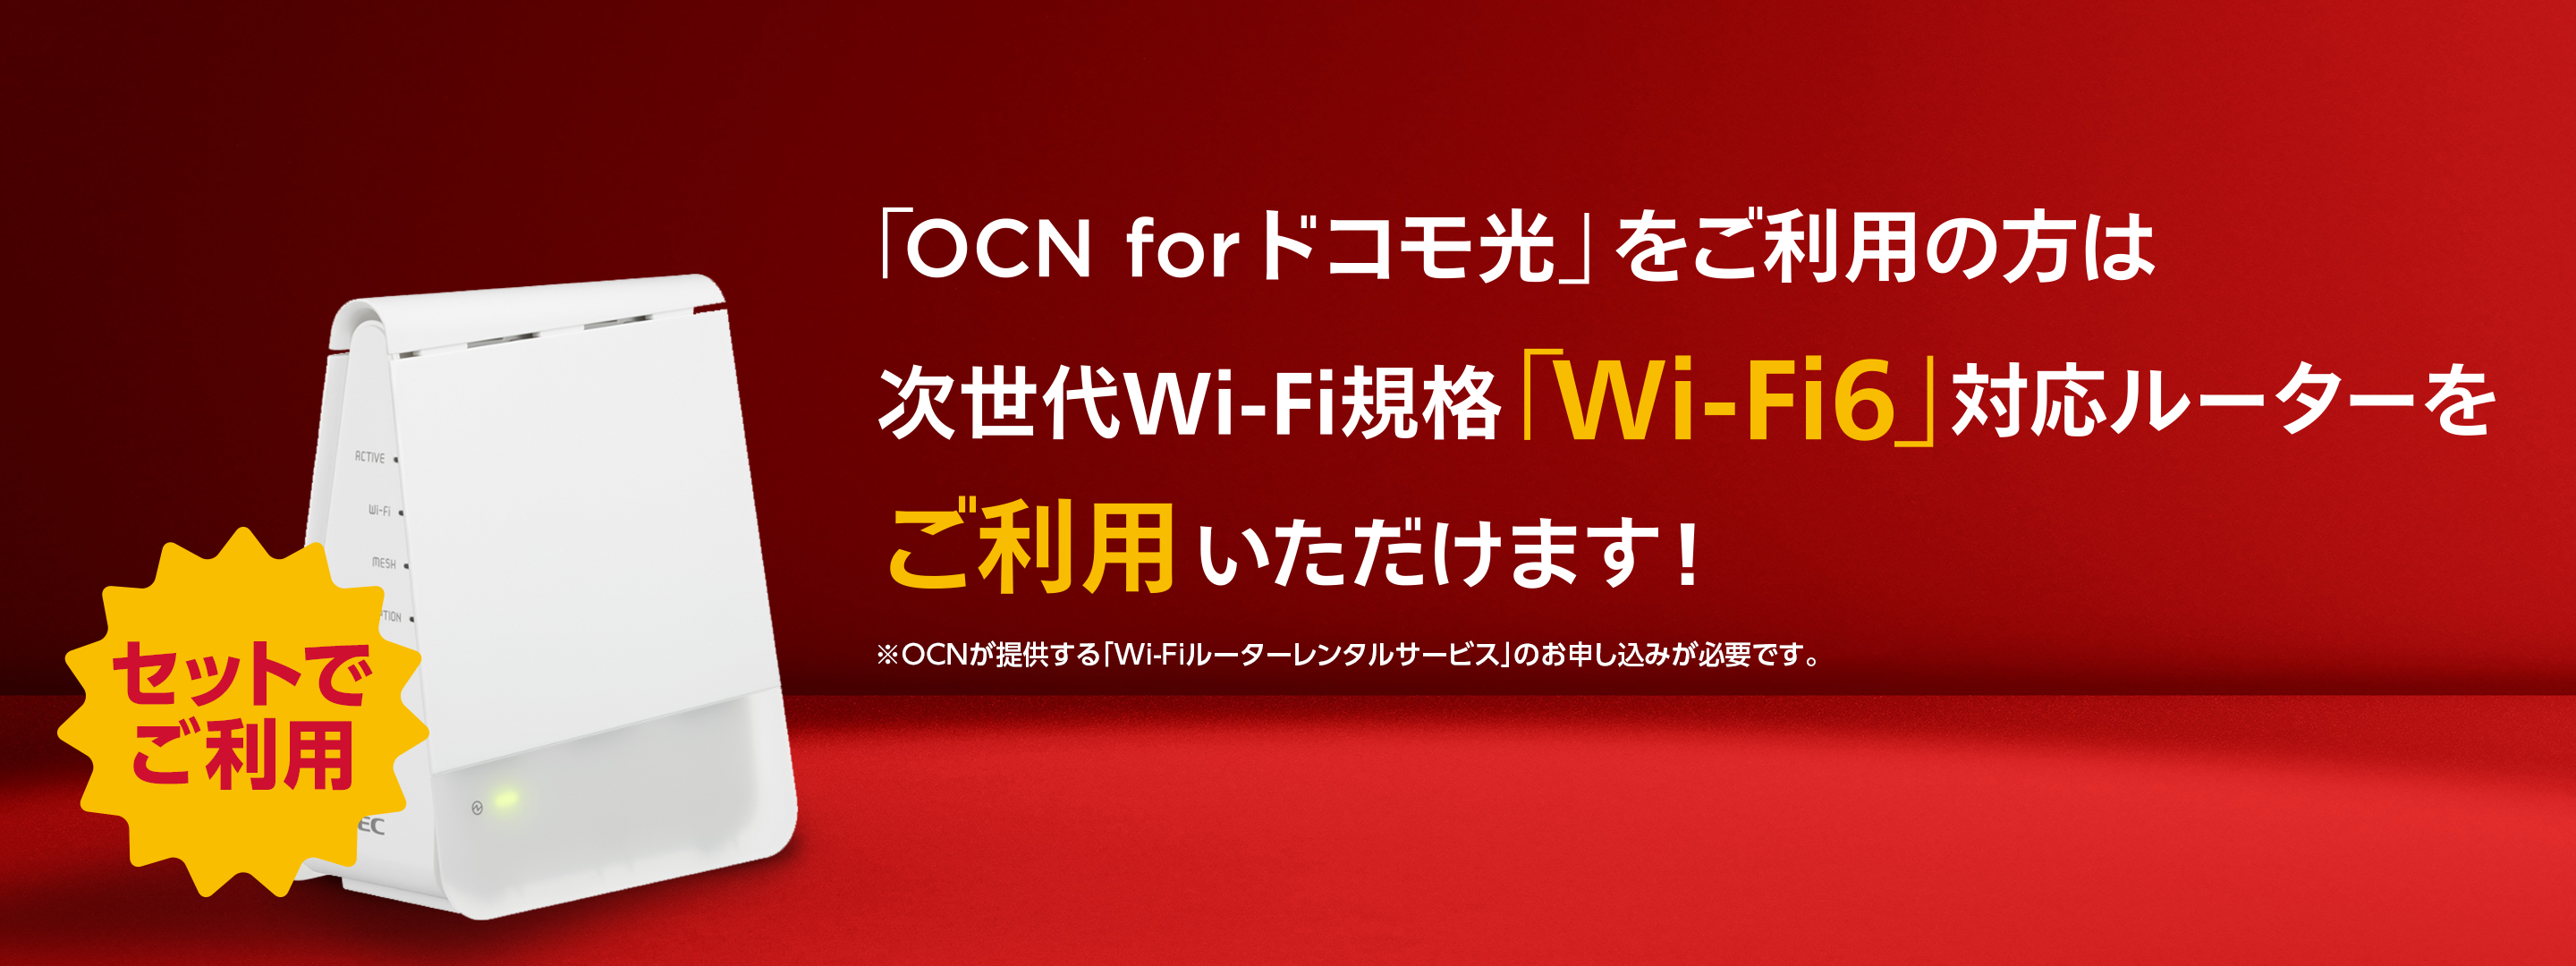 「OCN for ドコモ光」をご利用の方は高速のWi-Fi6対応ルーターをご利用いただけます！※NTTレゾナントが提供する「Wi-Fiルーターレンタルサービス」のお申し込みが必要です。